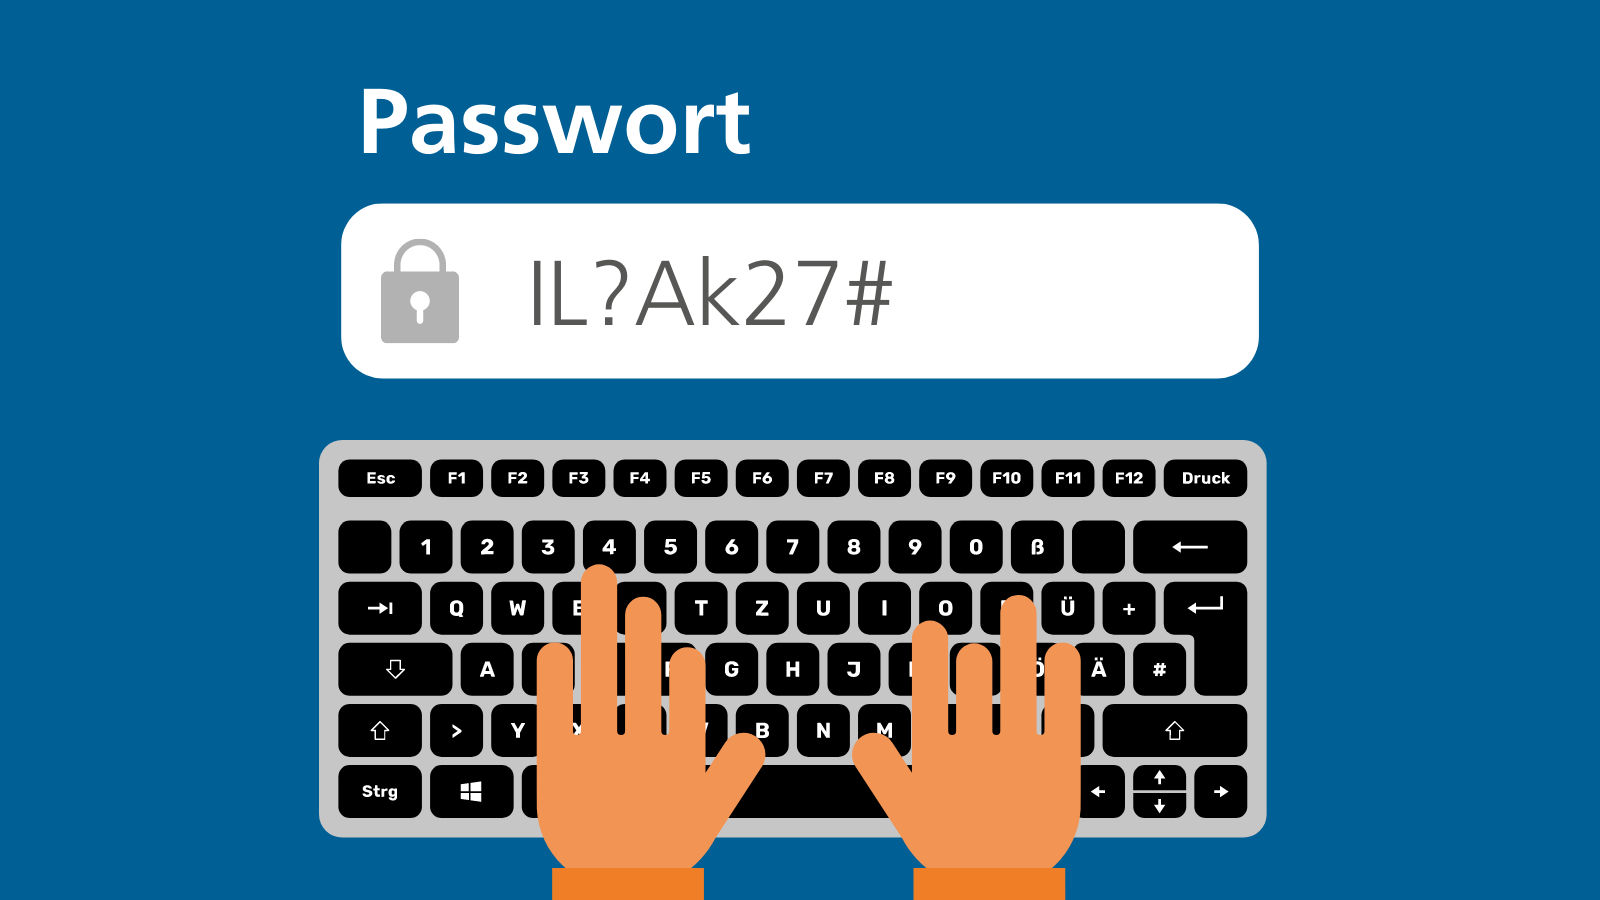 Zwei Hände tippen auf einer Computertastatur. Darüber ist ein Passwortfeld mit dem Passwort "IL?Ak27#"